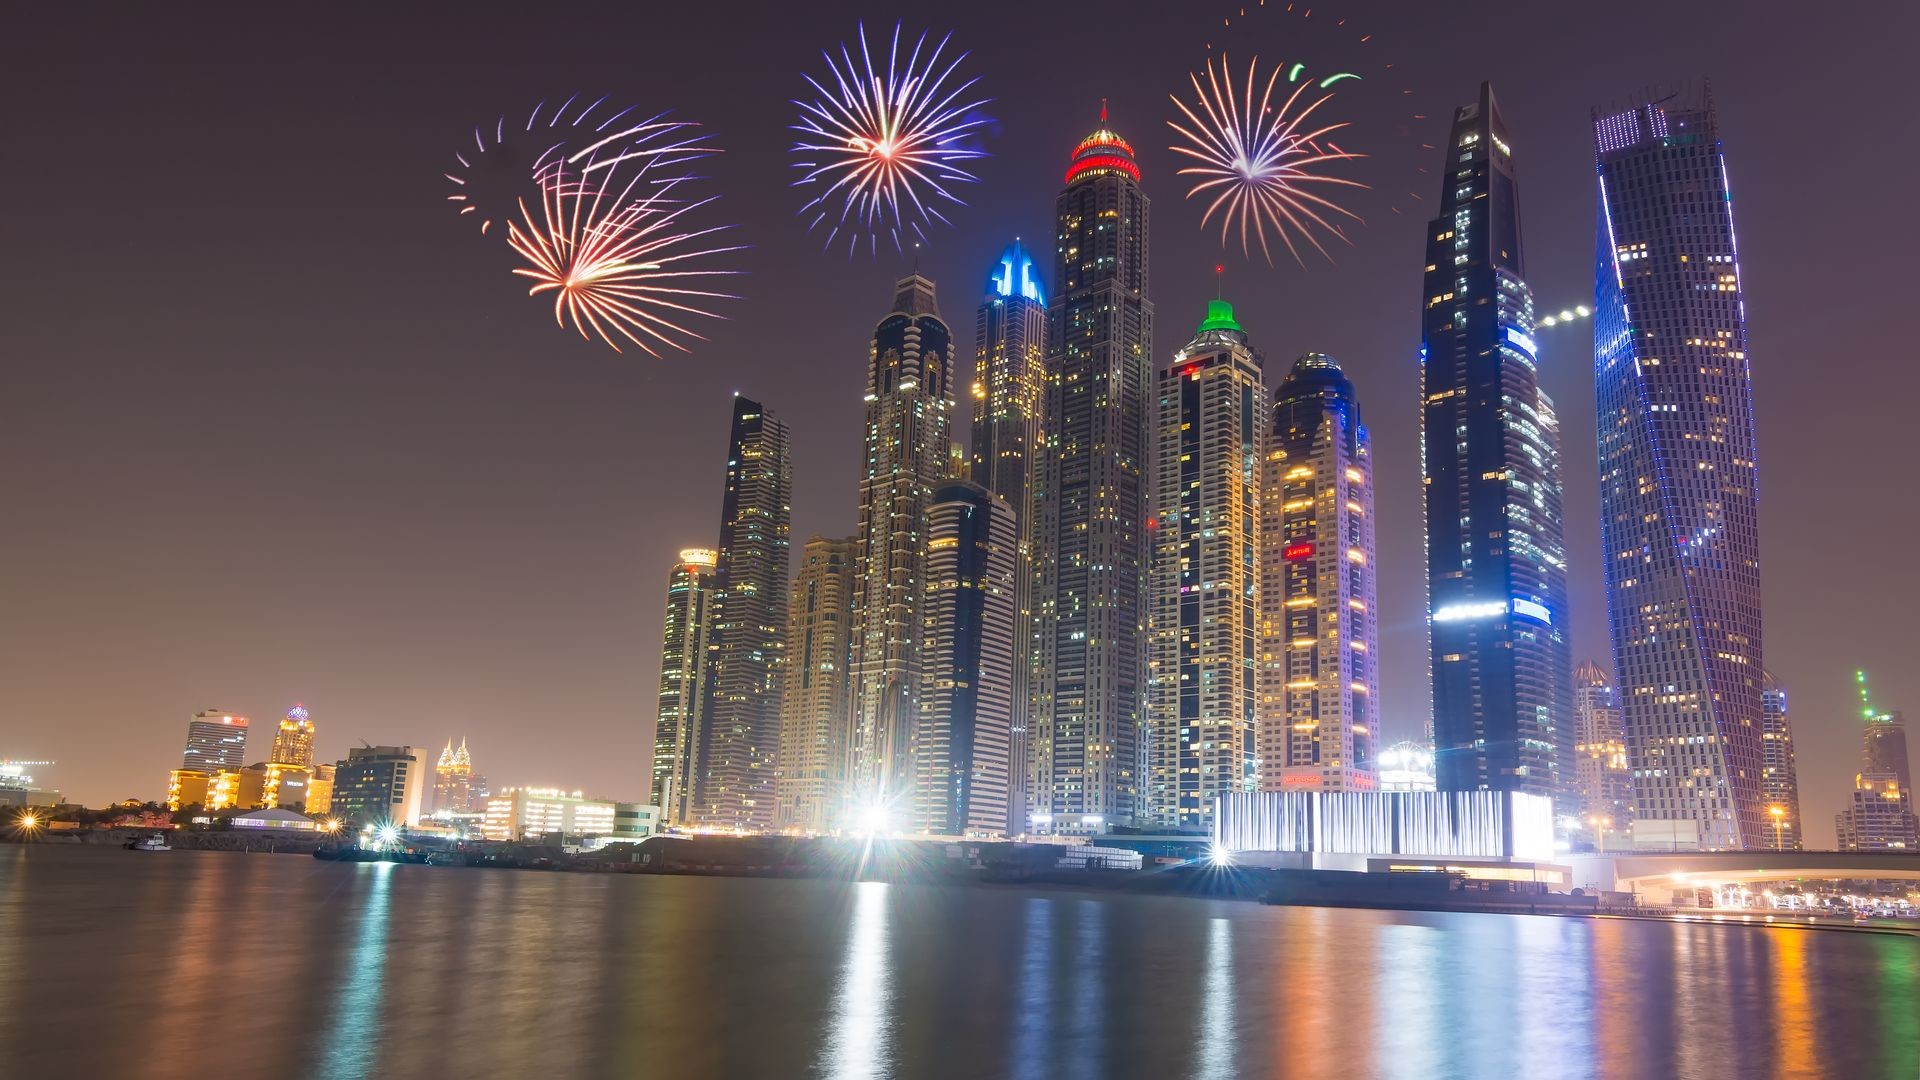 New Year fireworks display in Dubai Marina, UAE